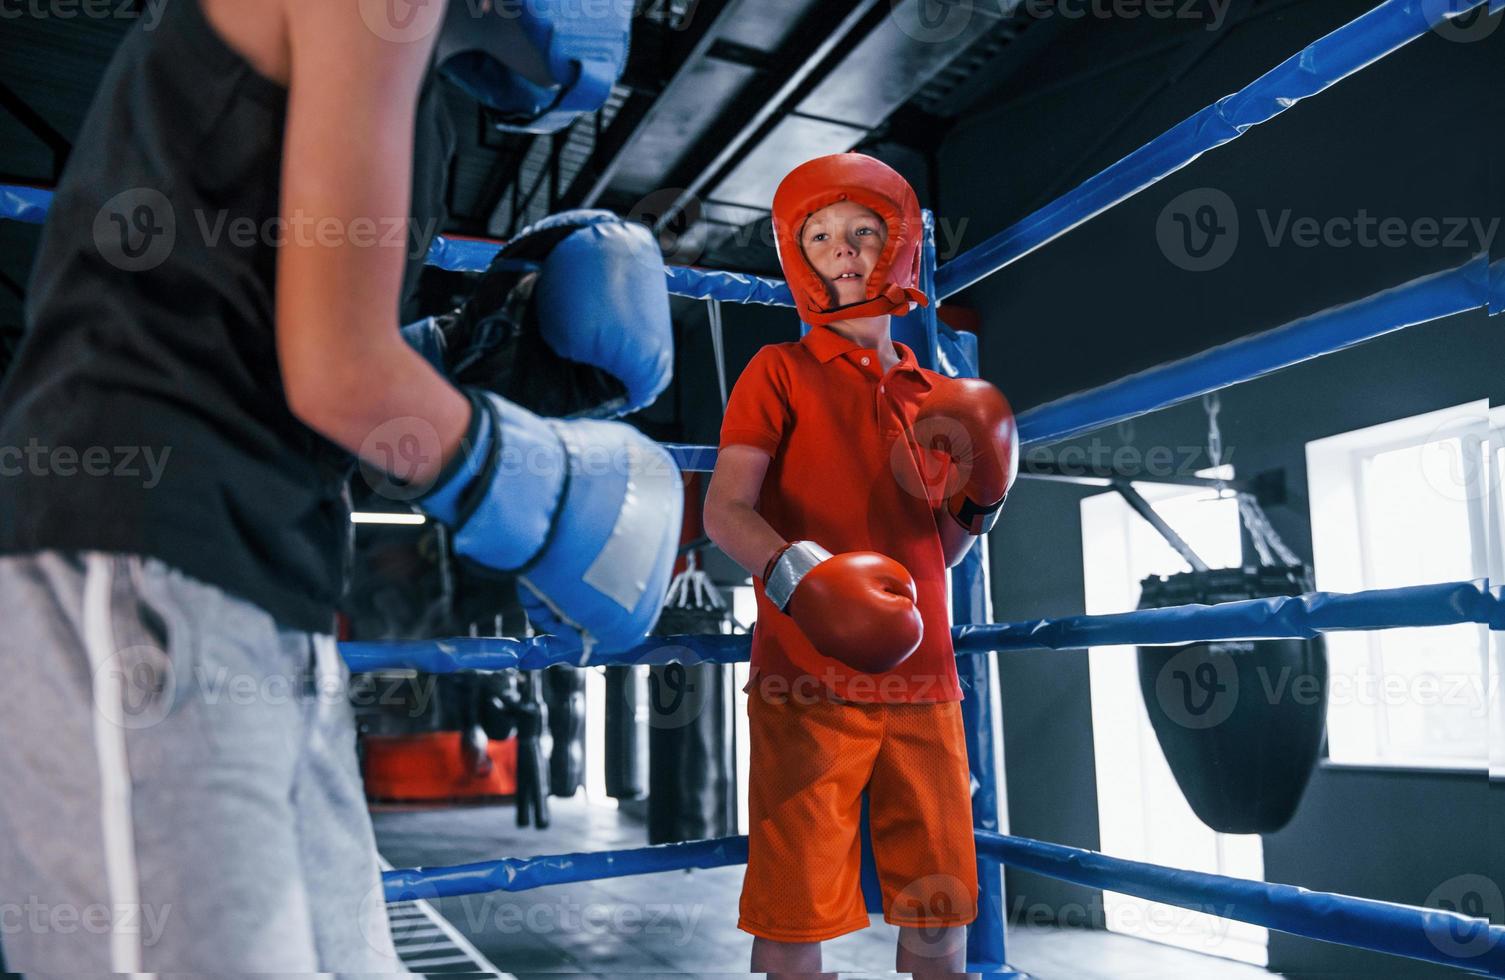 zwei jungen in schutzausrüstung haben sparring und kämpfen auf dem boxring foto